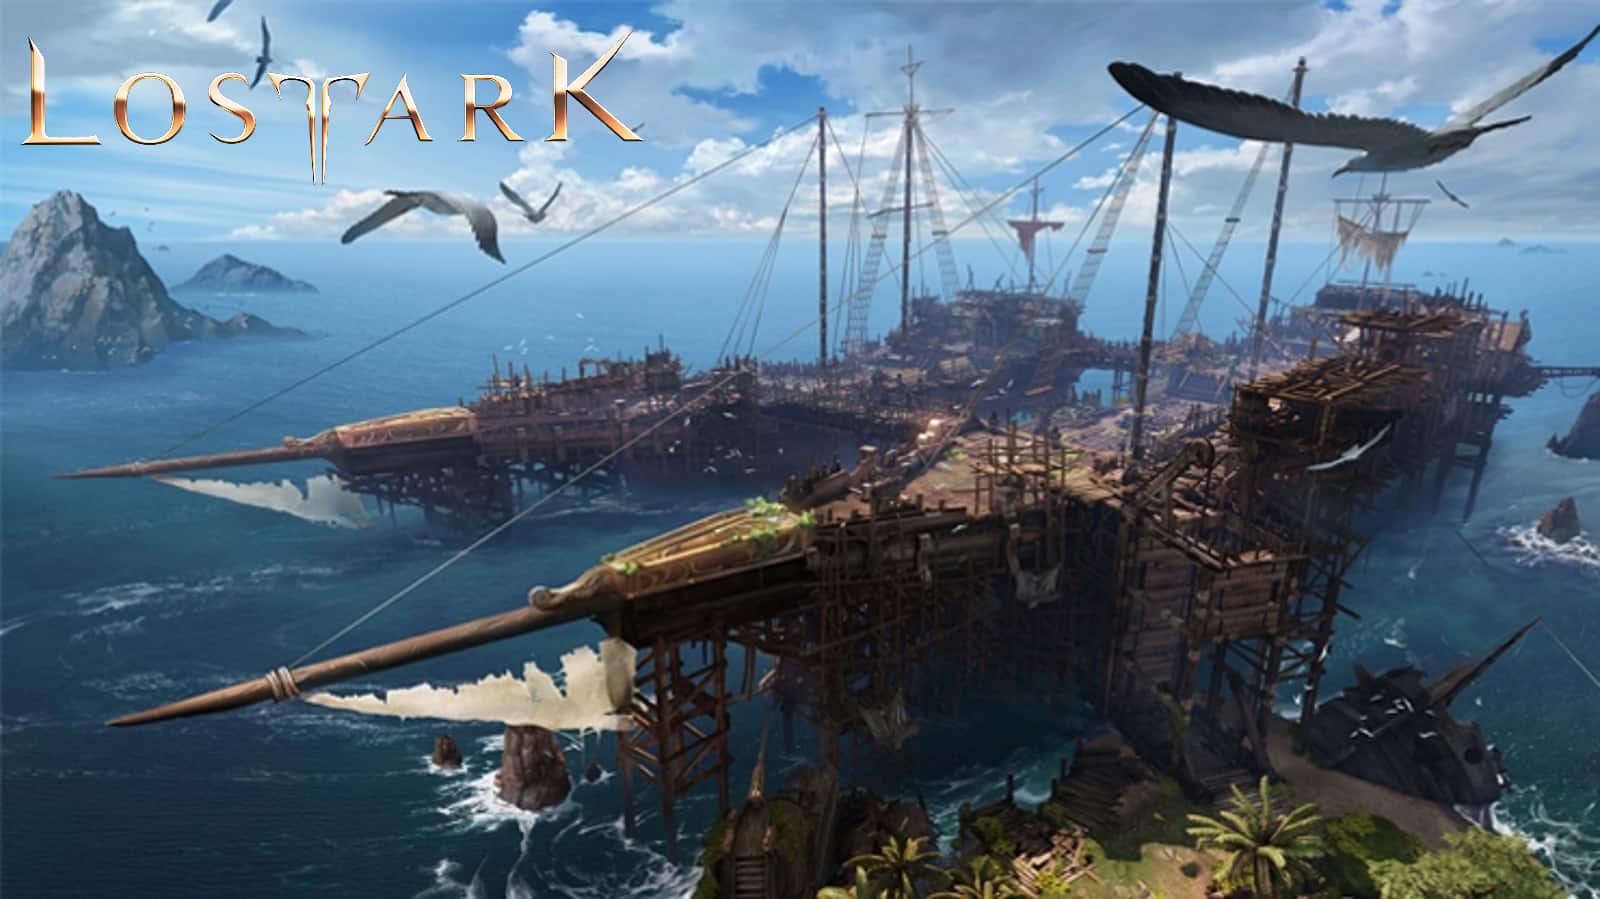 lost ark ship in harbor